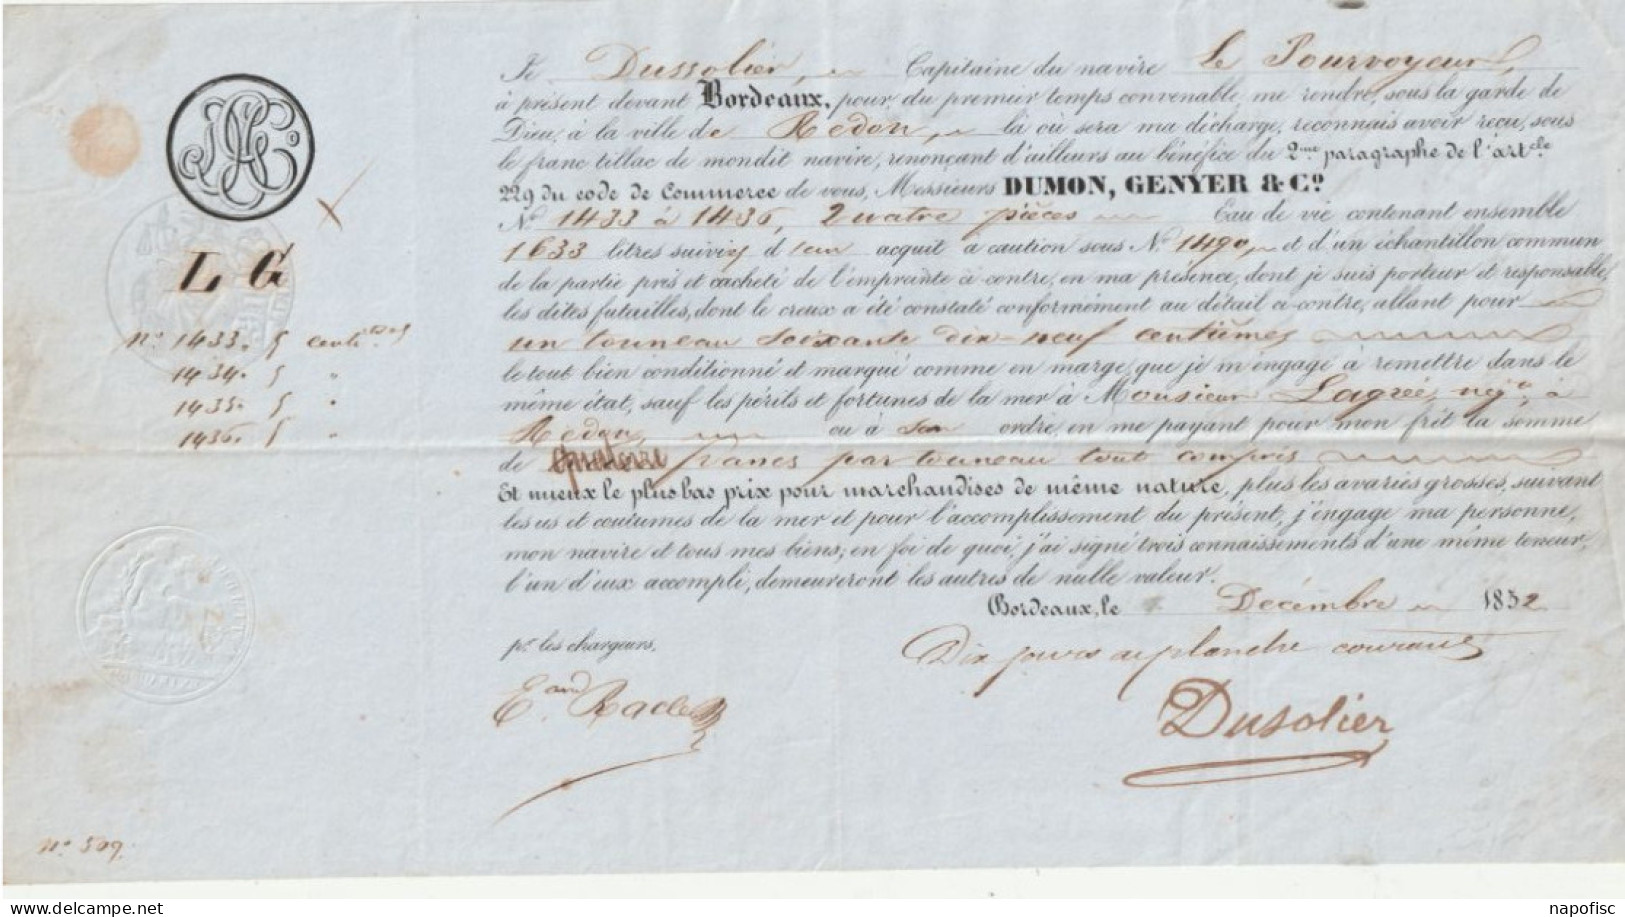 33-Connaissement Dumon, Genyer & Cie....Dussolier..Capitaine Navire Le Pourvoyeur...Bordeaux (Gironde) 1852 - Transports